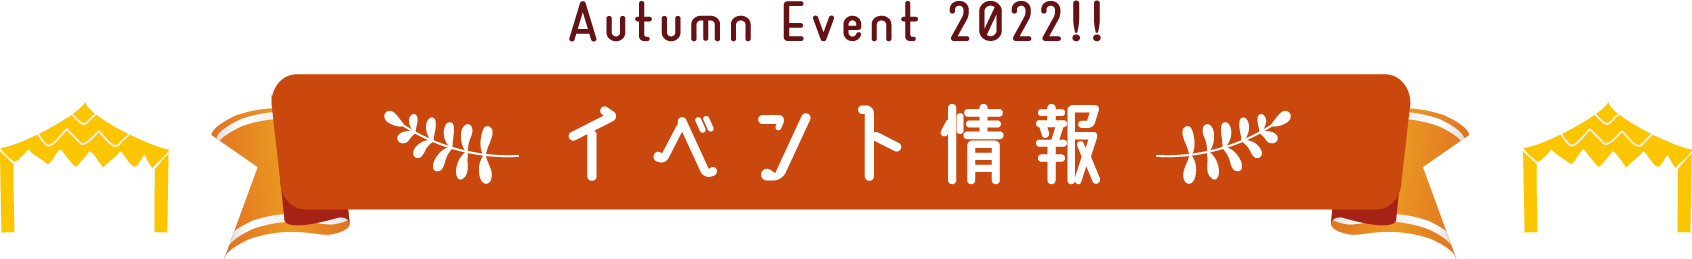 Autumn Event 2022!!イベント情報